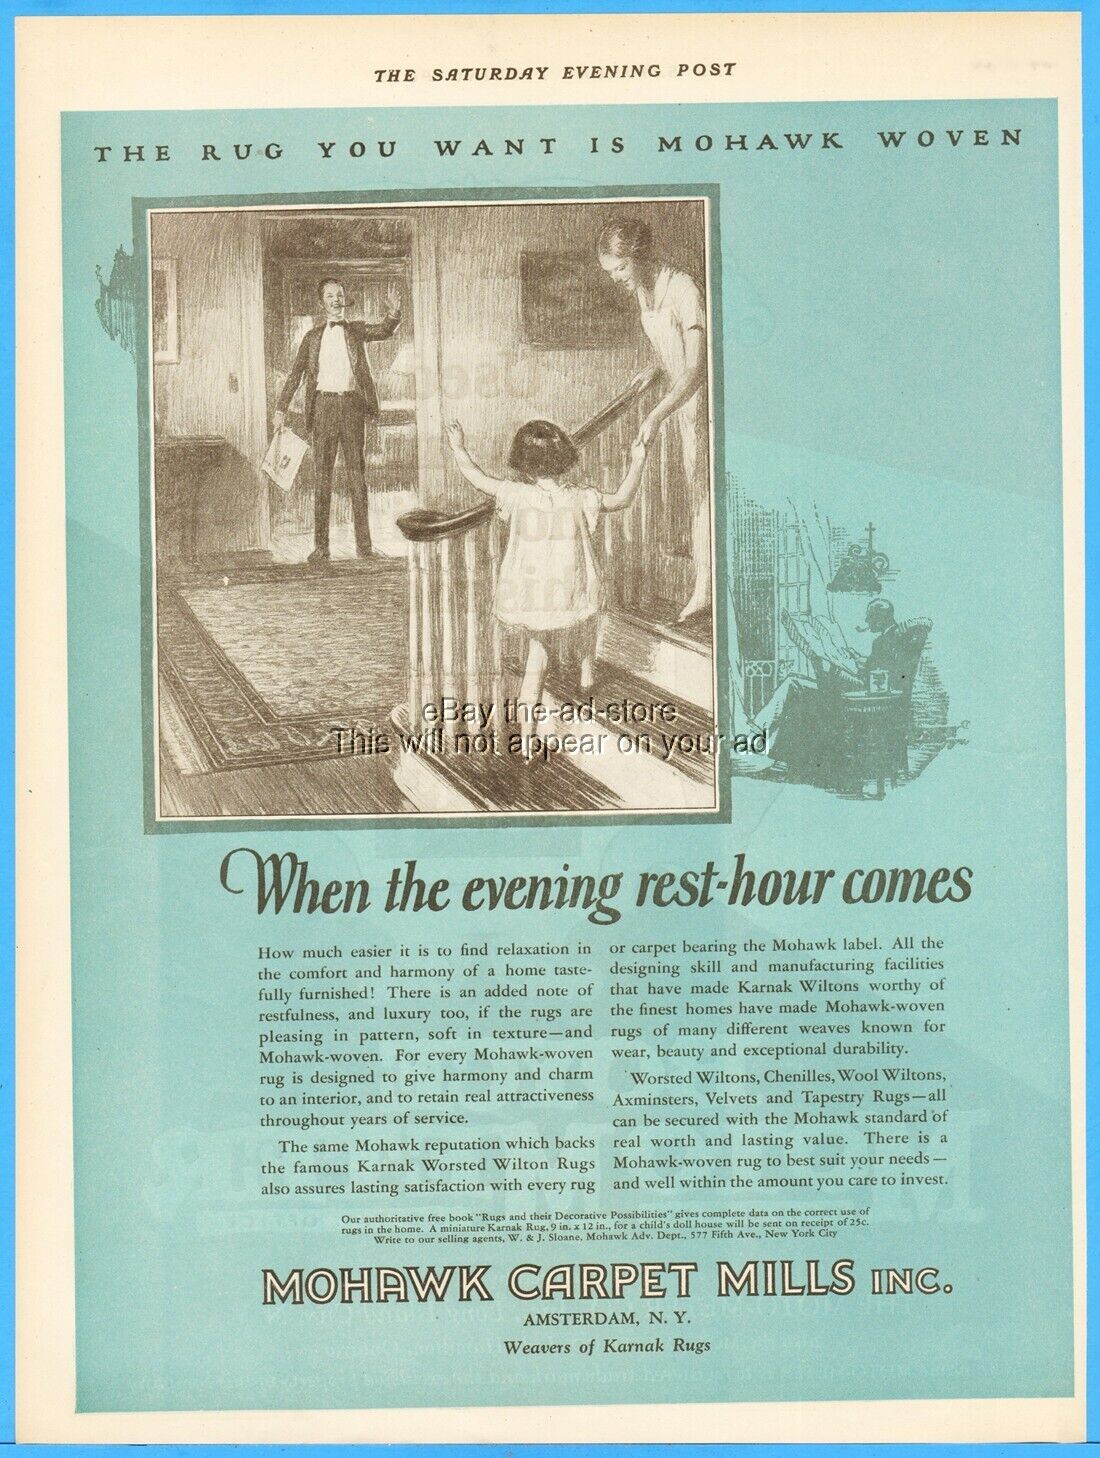 1925 Mohawk Carpet Mills Karnak Area Rug 1920's Home Decor Amsterdam New York Ad